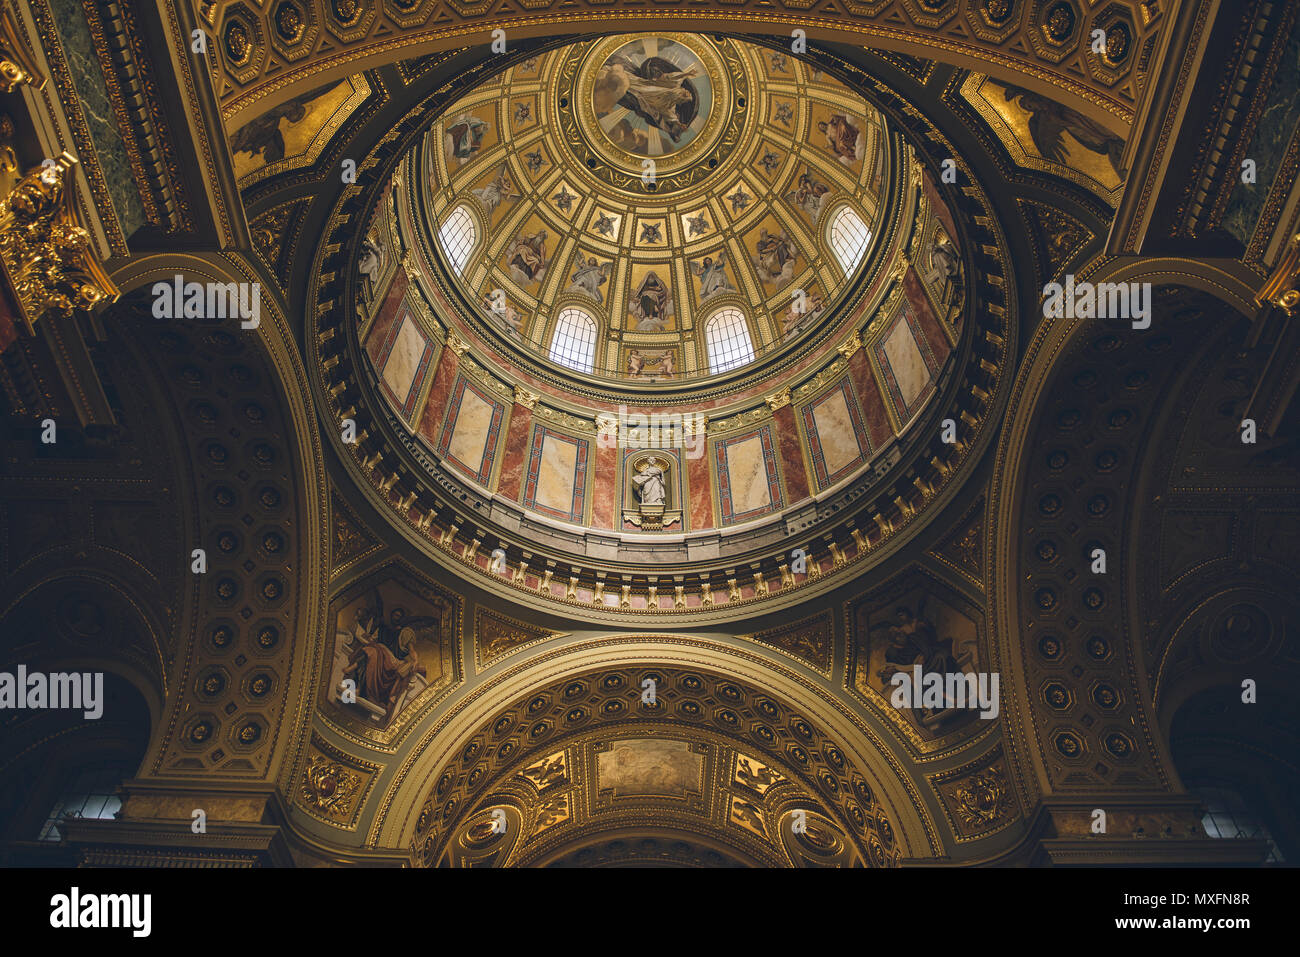 Innenraum der Römisch-katholischen Kirche St.-Stephans-Basilika Kuppel. Reich Decke mit gemalten Szenen und gold Details eingerichtet. Stockfoto